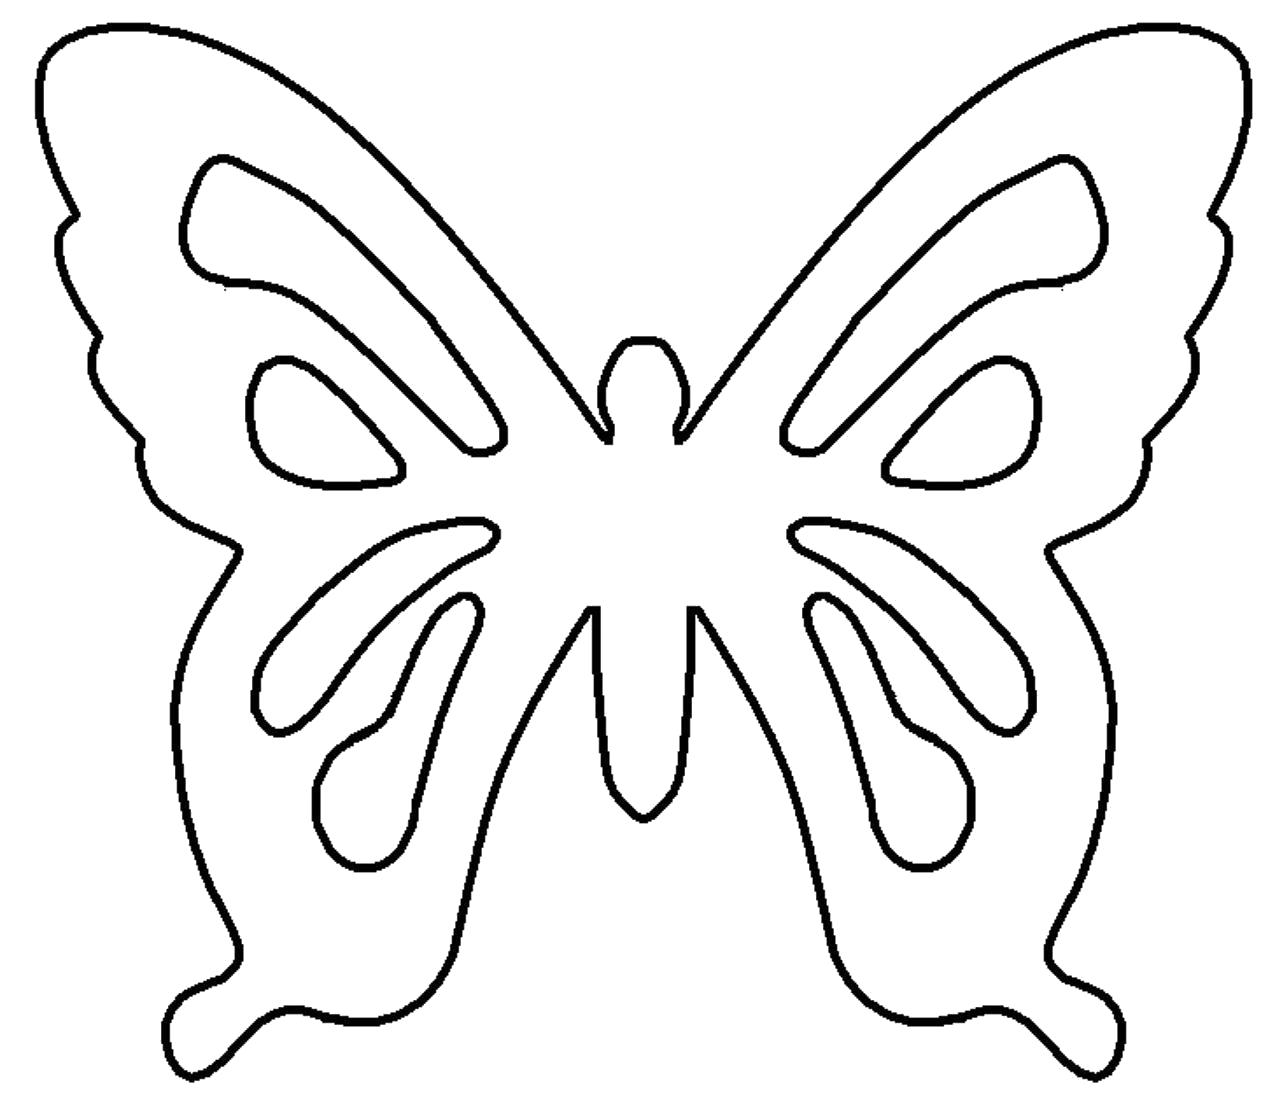 Название: Раскраска контур бабочки для вырезания. Категория: Бабочки. Теги: Бабочки.